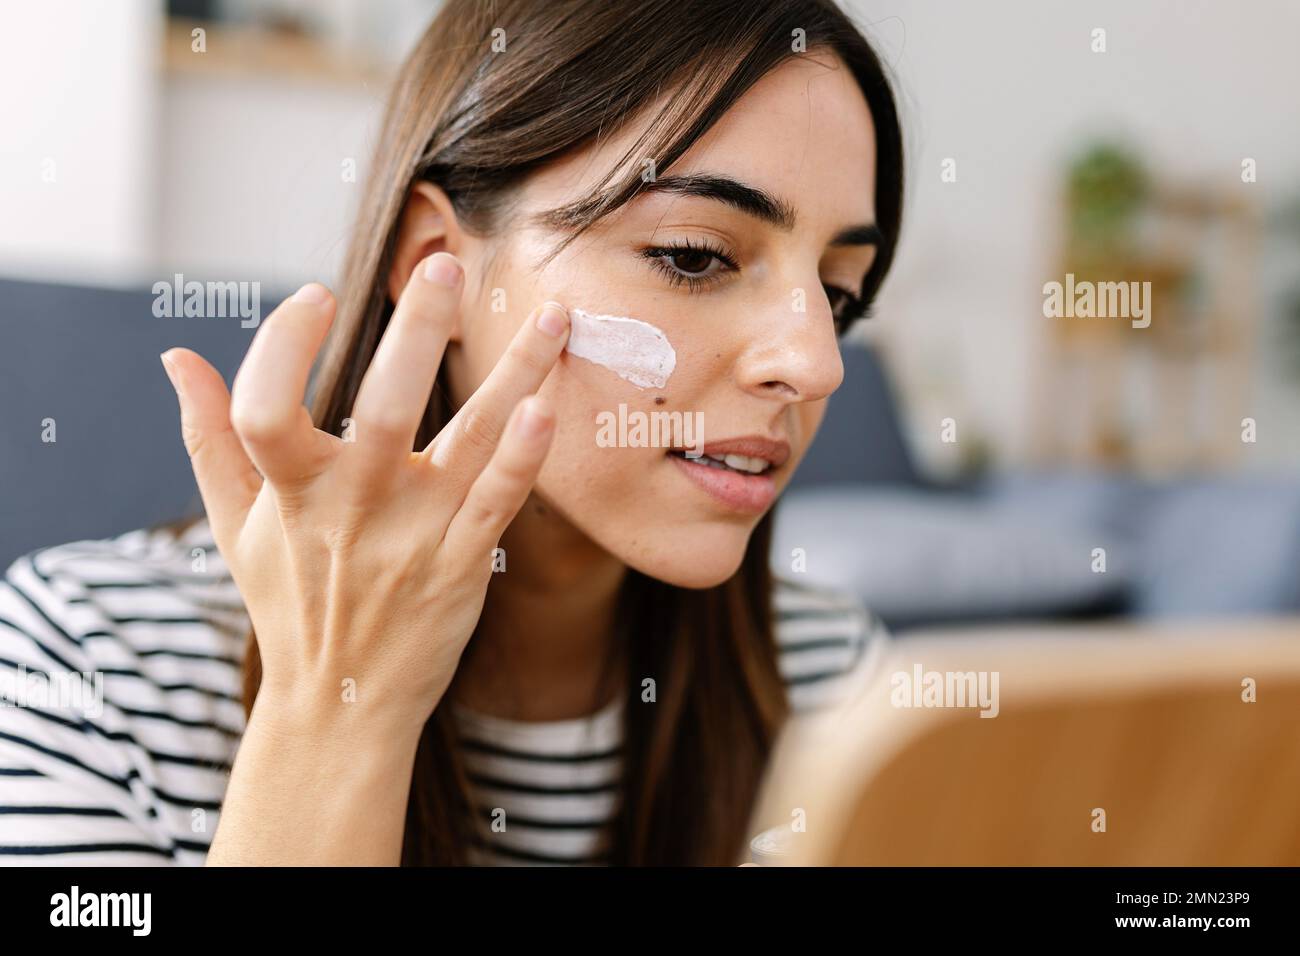 Mujer joven que usa el producto del cuidado de la piel. Mujer tomando crema para aplicar en la piel facial Foto de stock